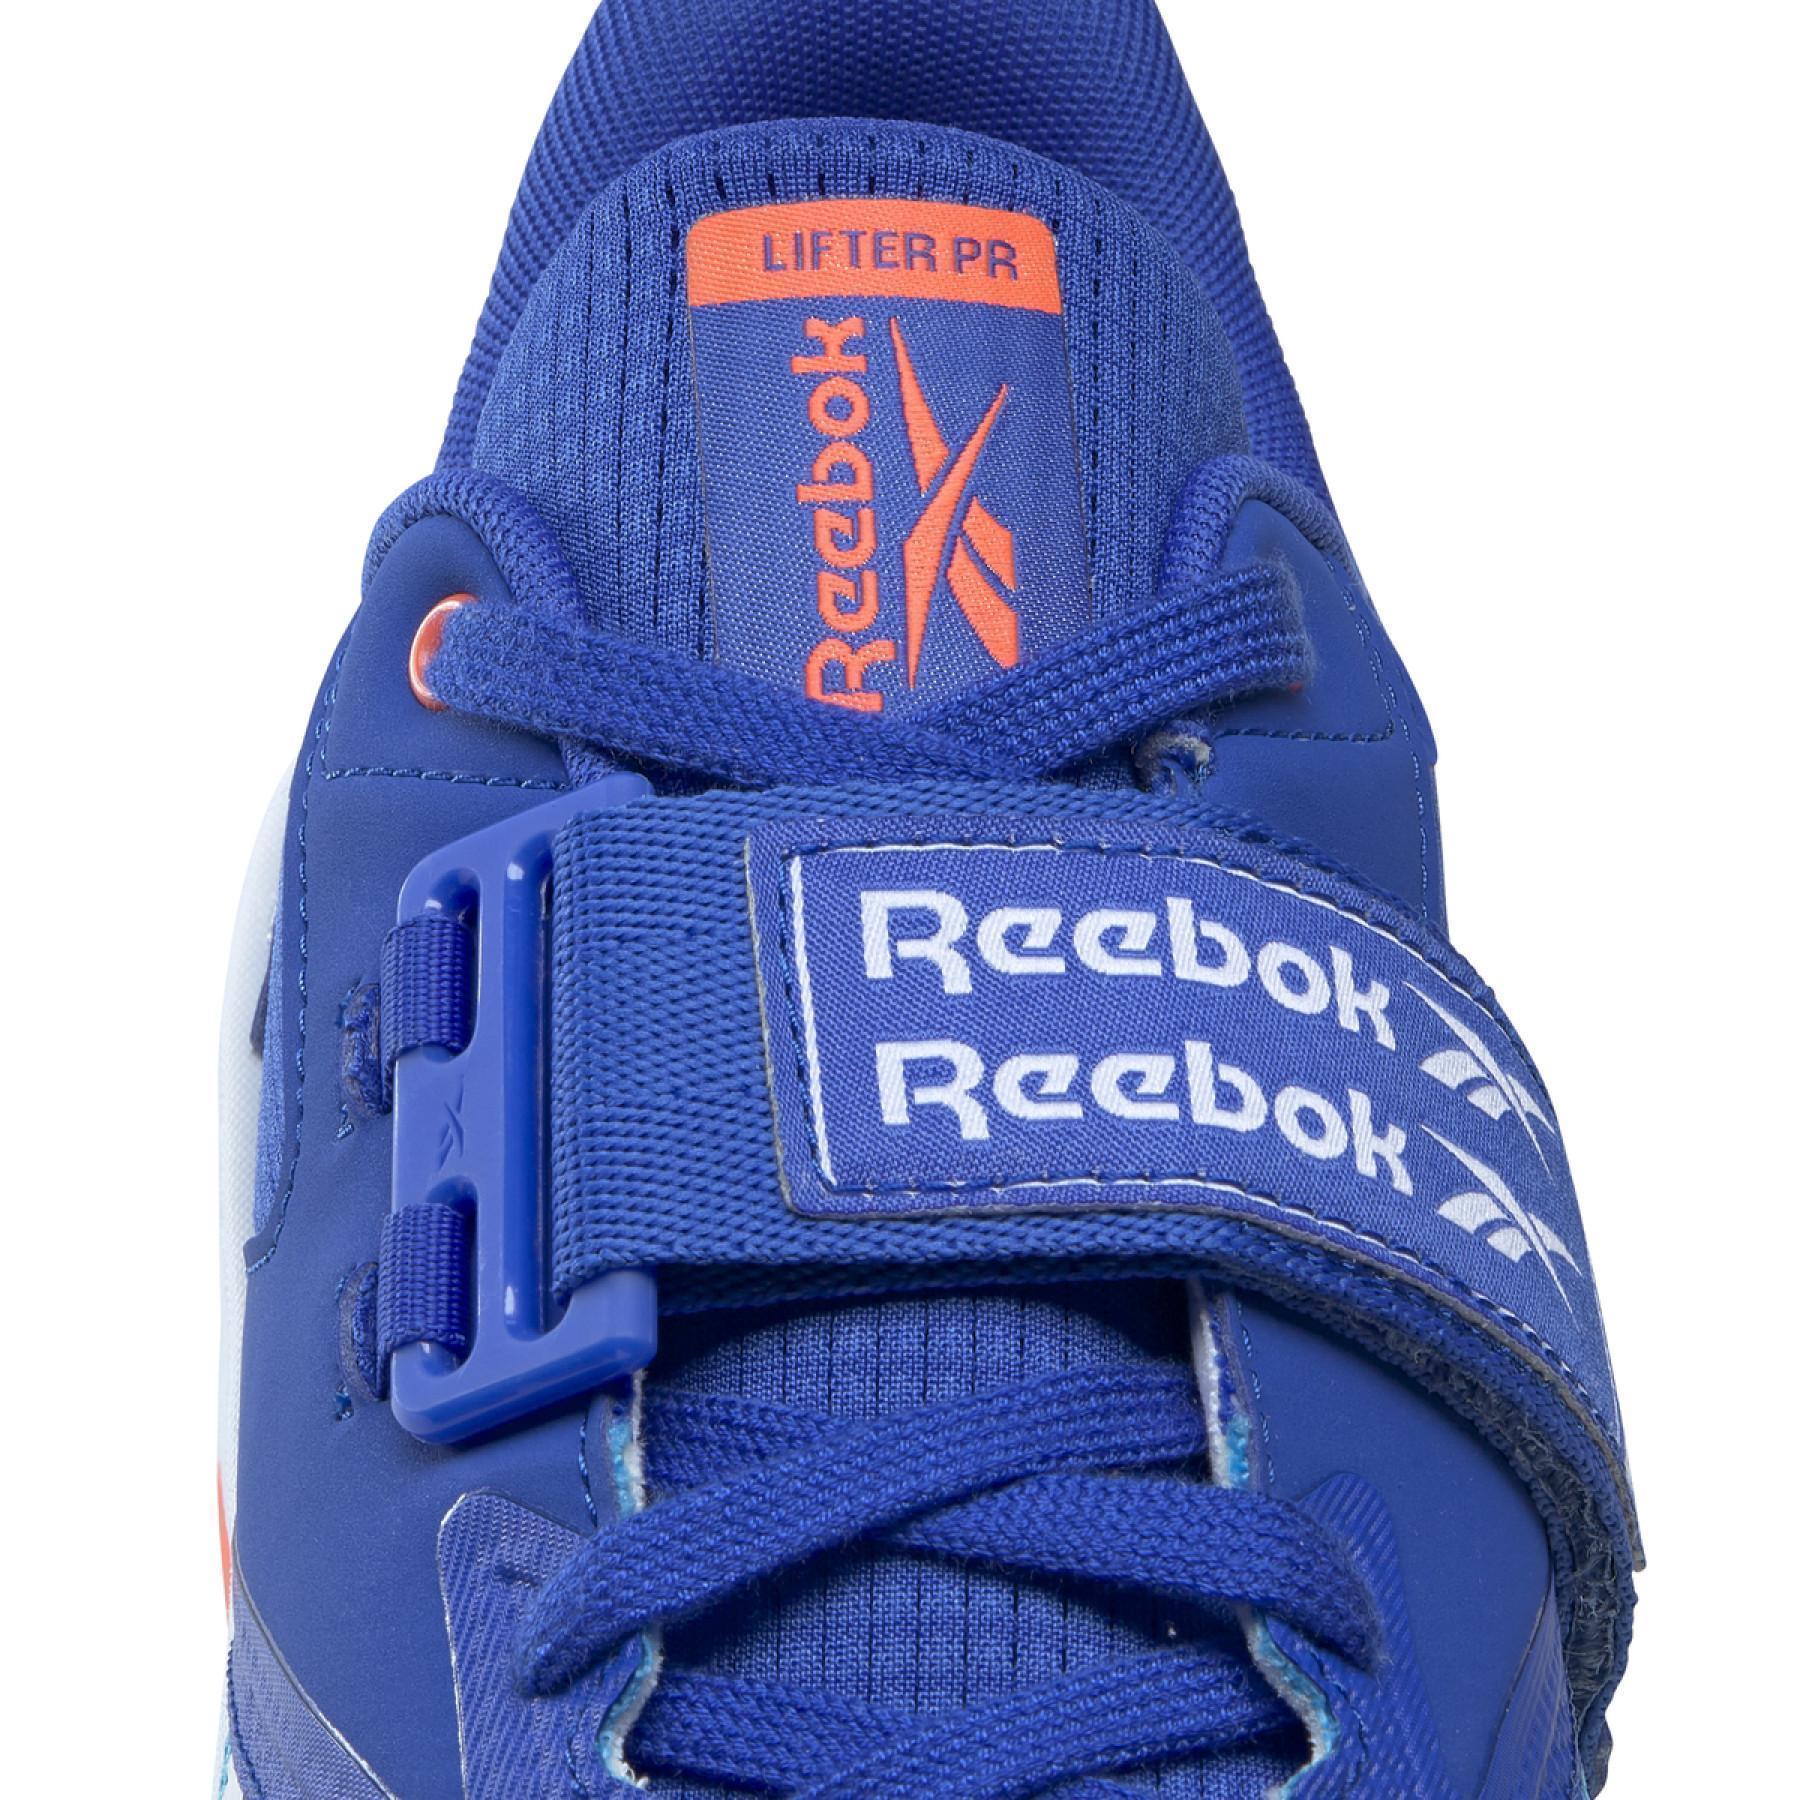 Chaussures Reebok Lifter PR II